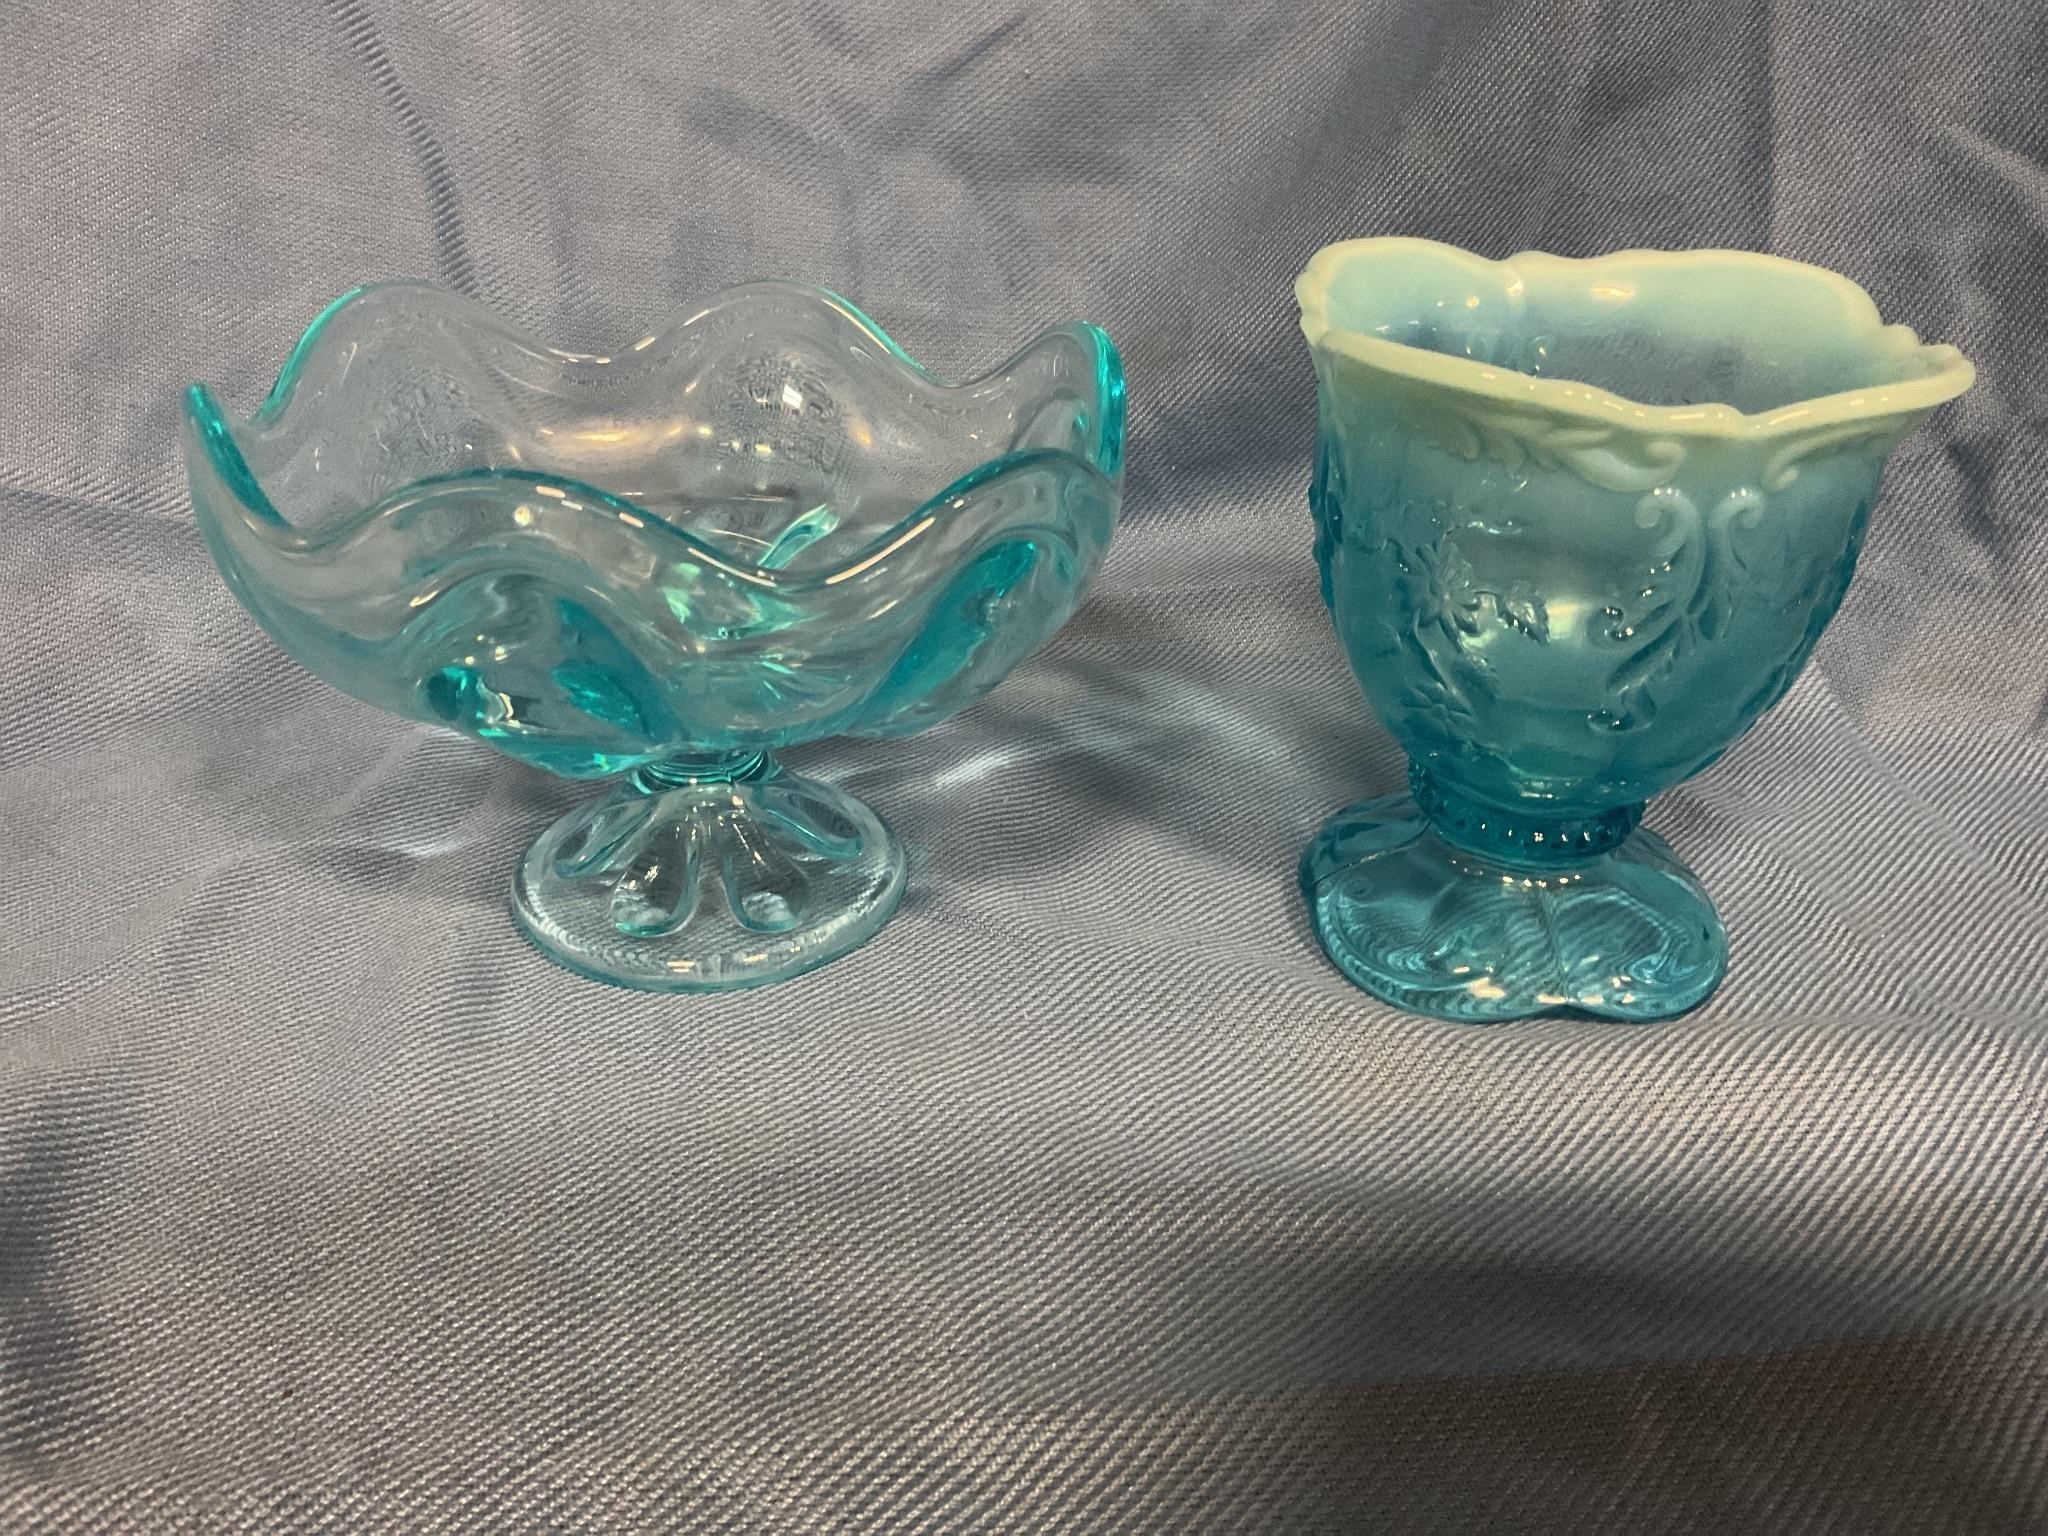 Vintage Blue bowls